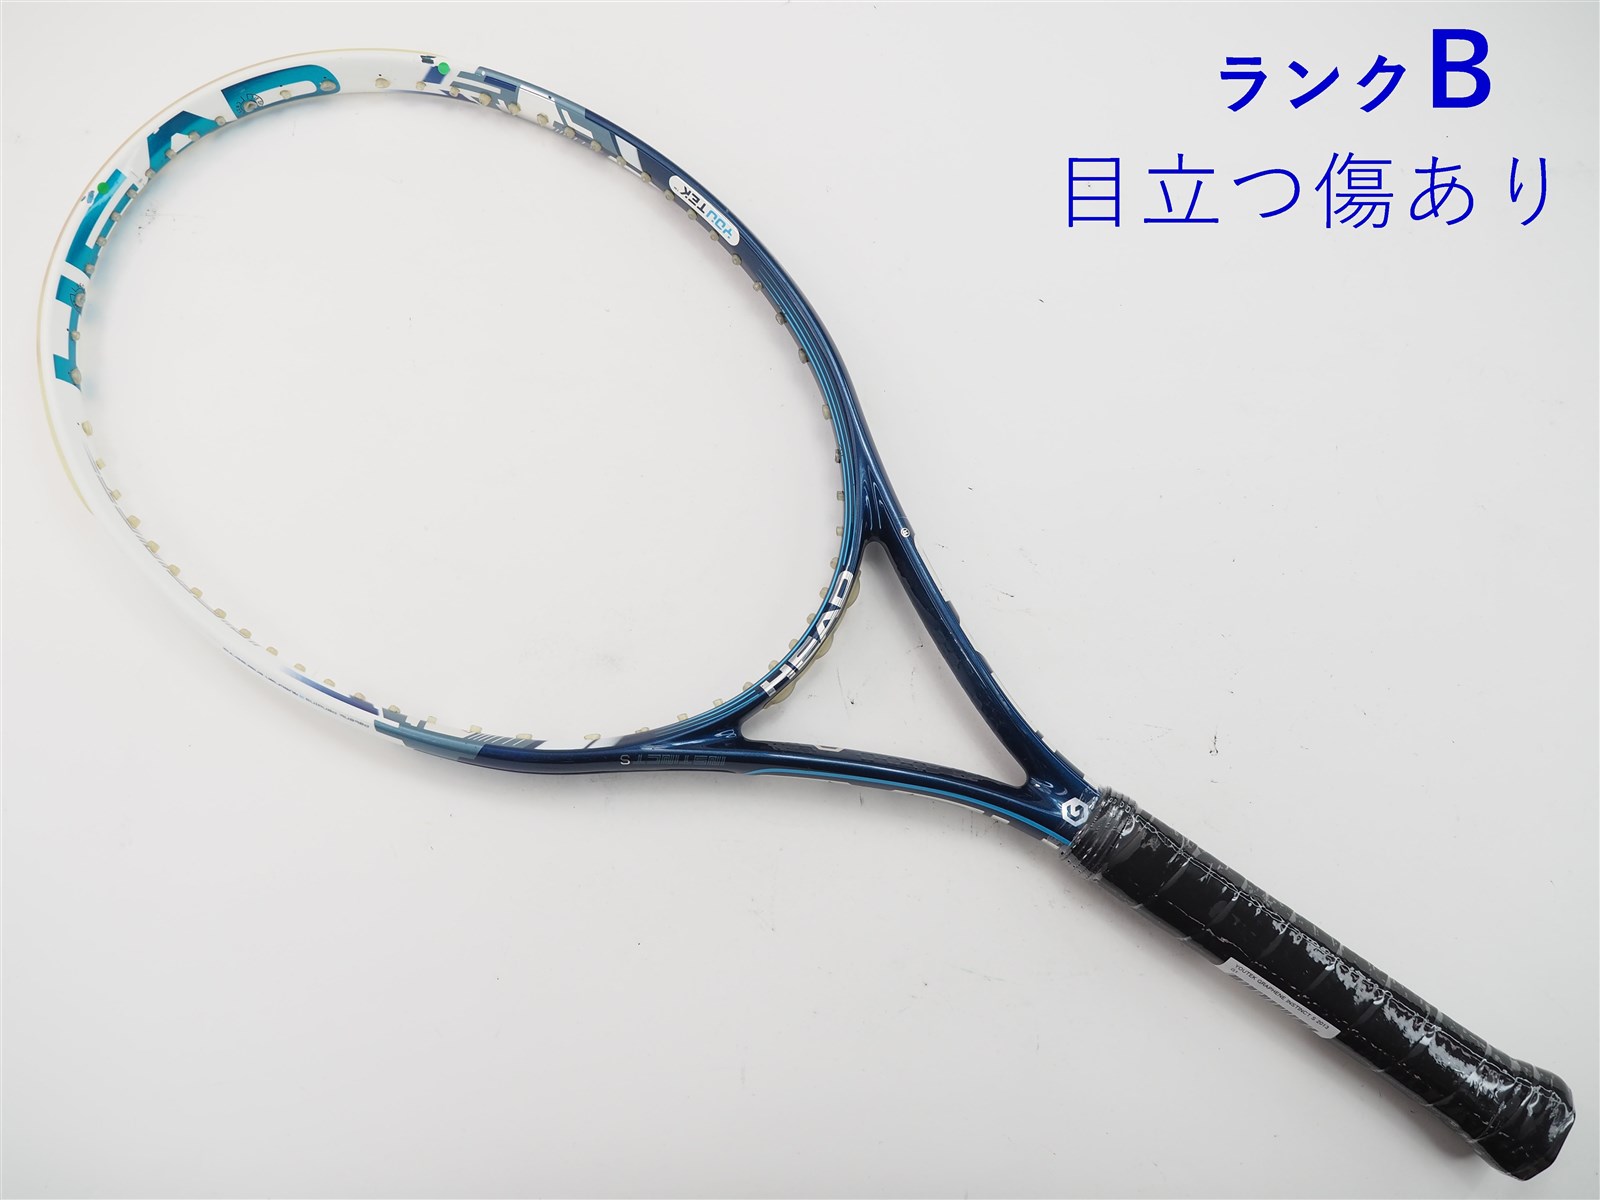 297ｇ張り上げガット状態テニスラケット ヘッド グラフィン XT スピード MP A 2015年モデル (G2)HEAD GRAPHENE XT SPEED MP A 2015